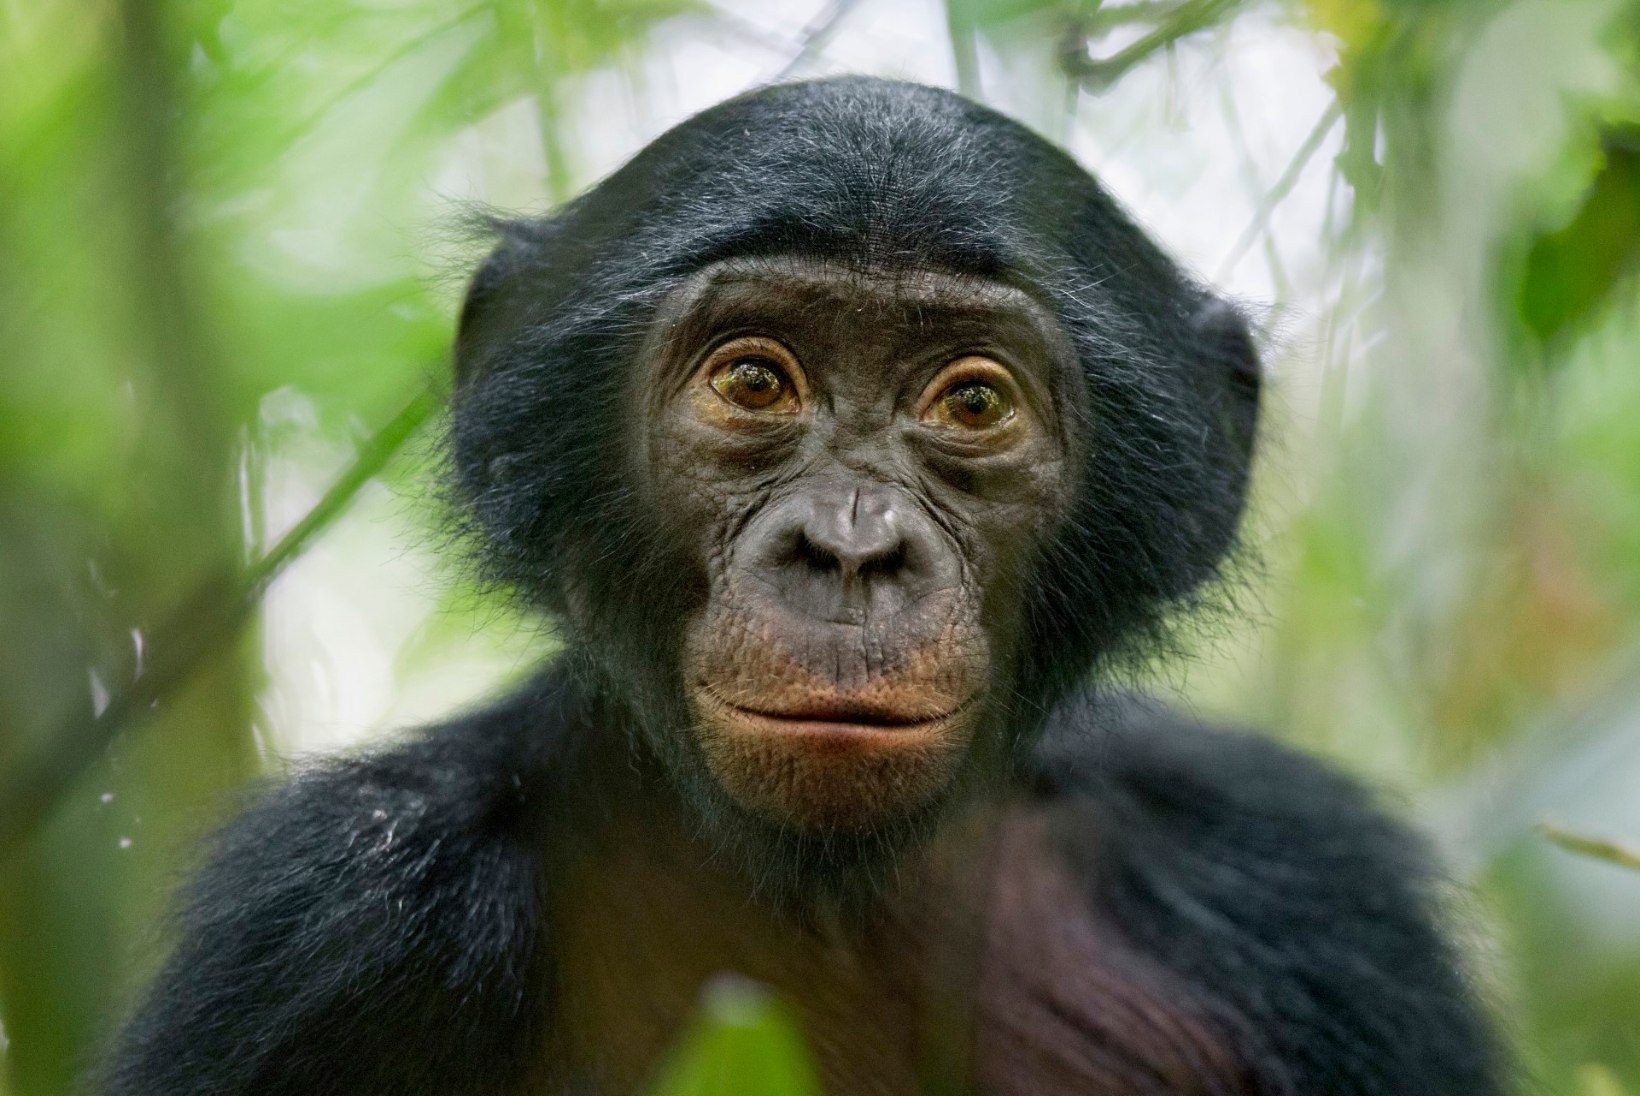 Inimene pole ainuke: ka vananevad ahvid vajaksid prille